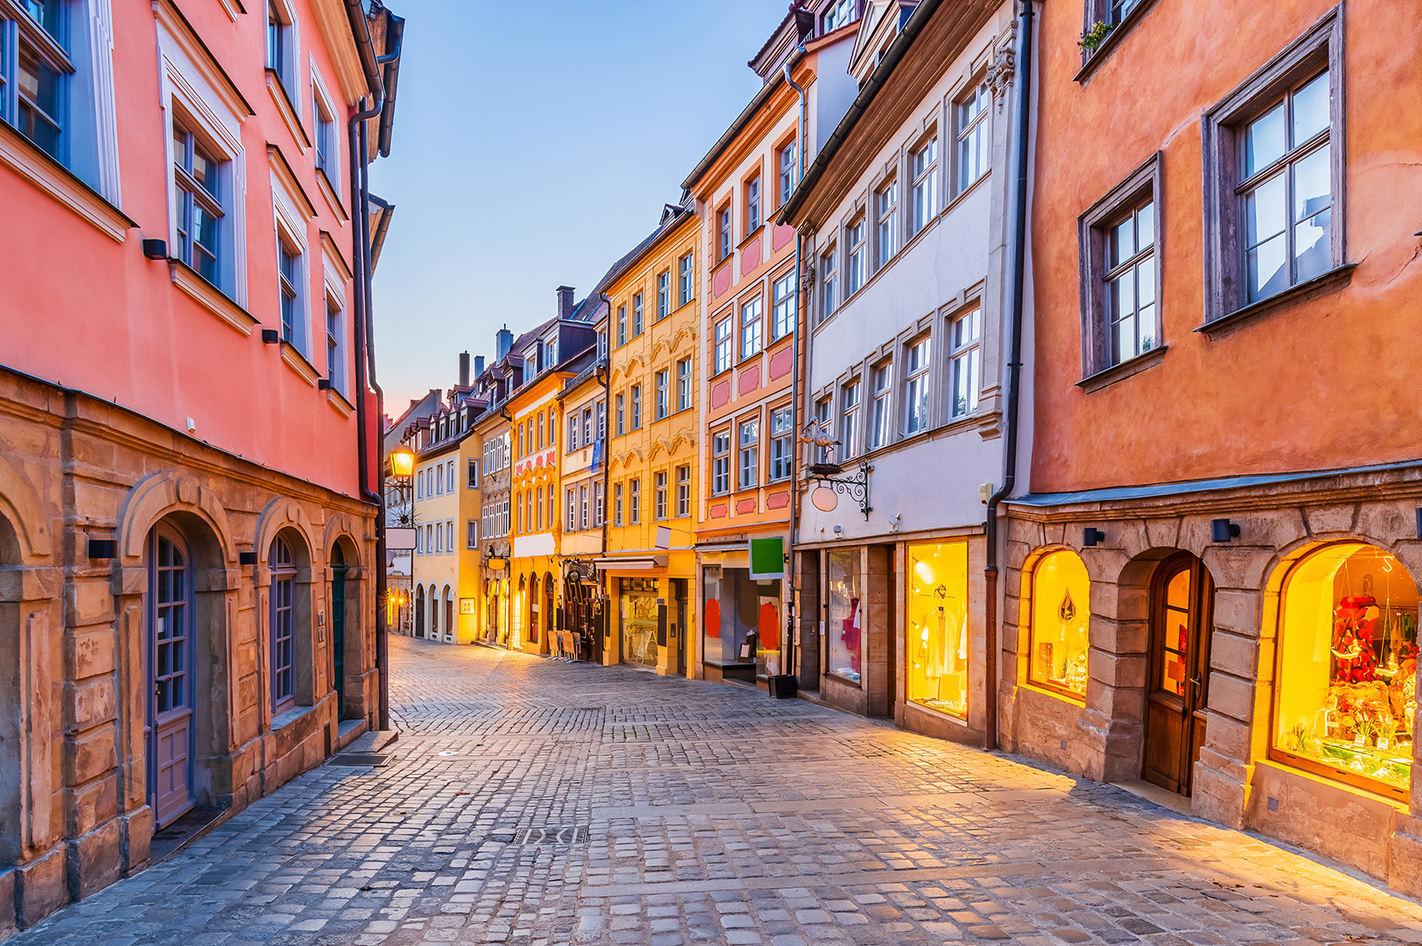 Städtereise Bamberg für 2 (2 Nächte)